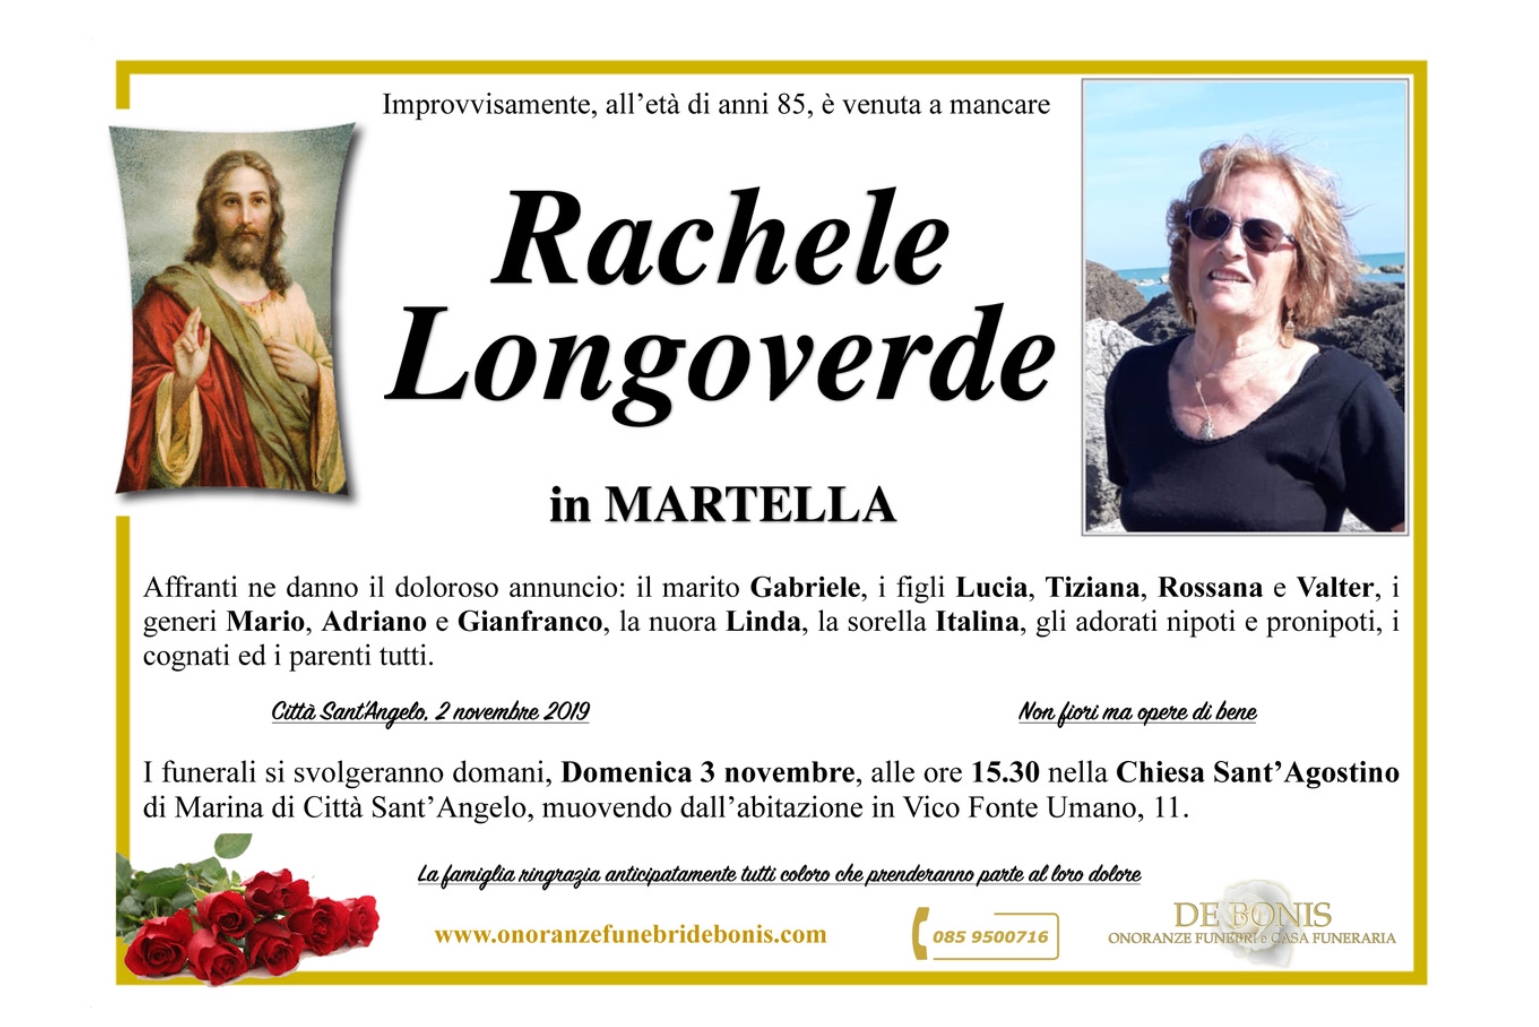 Rachele Longoverde